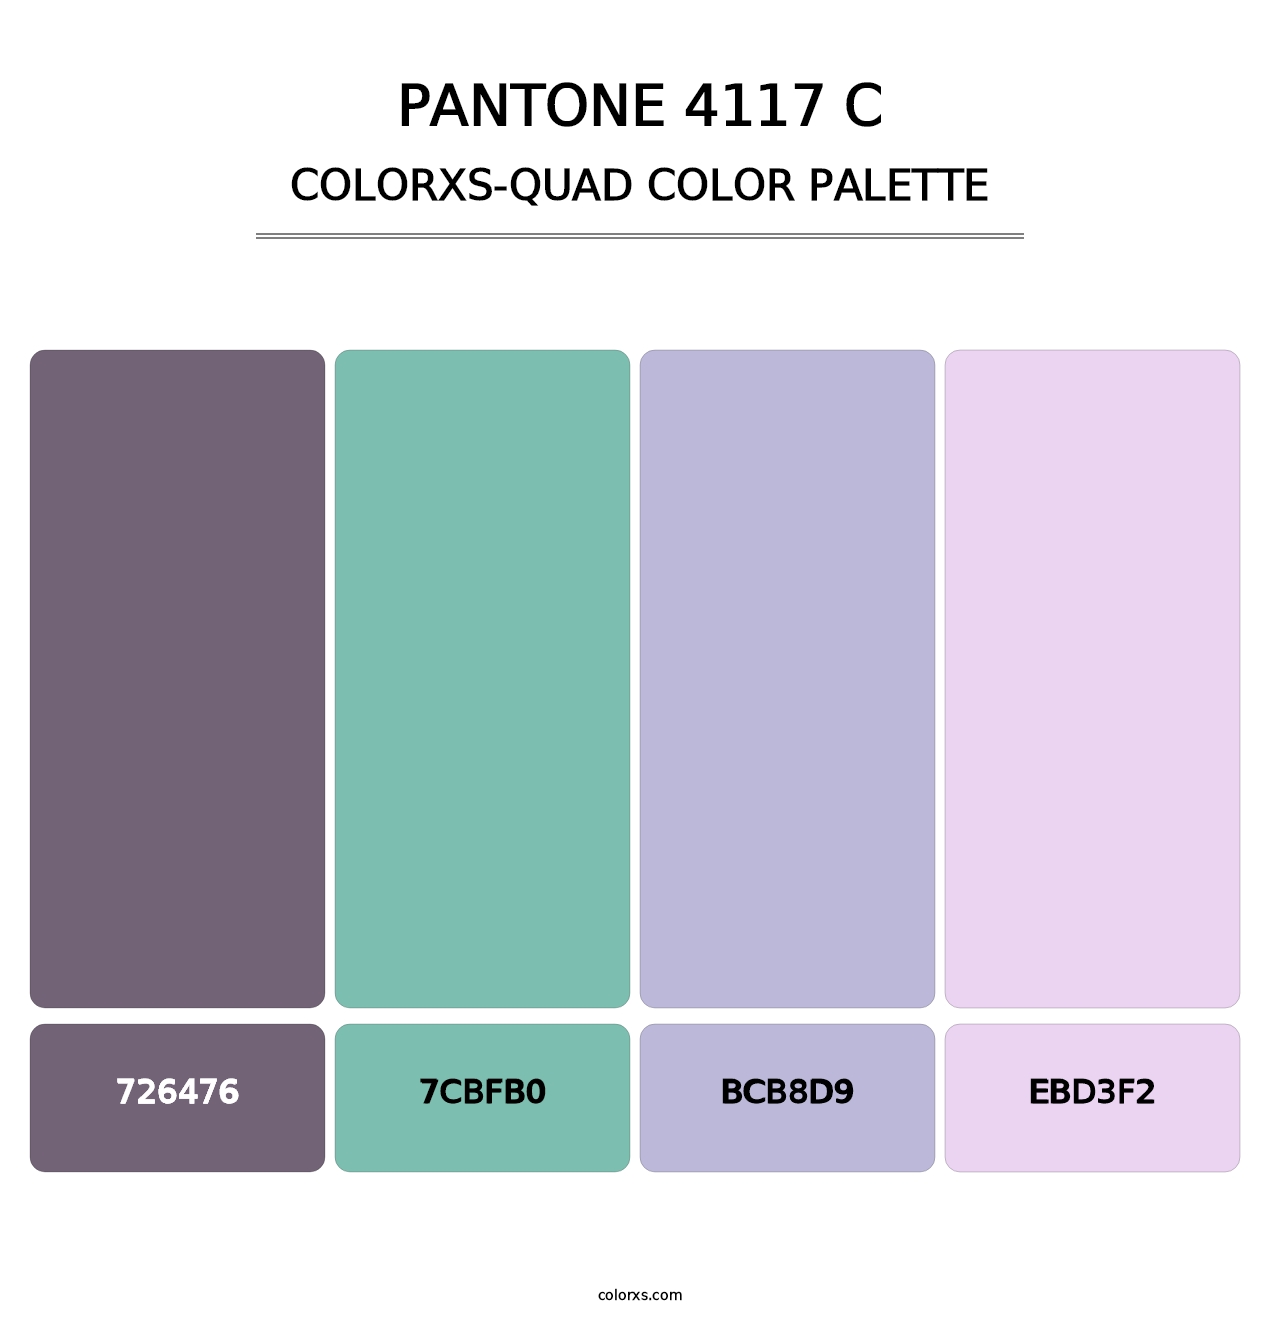 PANTONE 4117 C - Colorxs Quad Palette